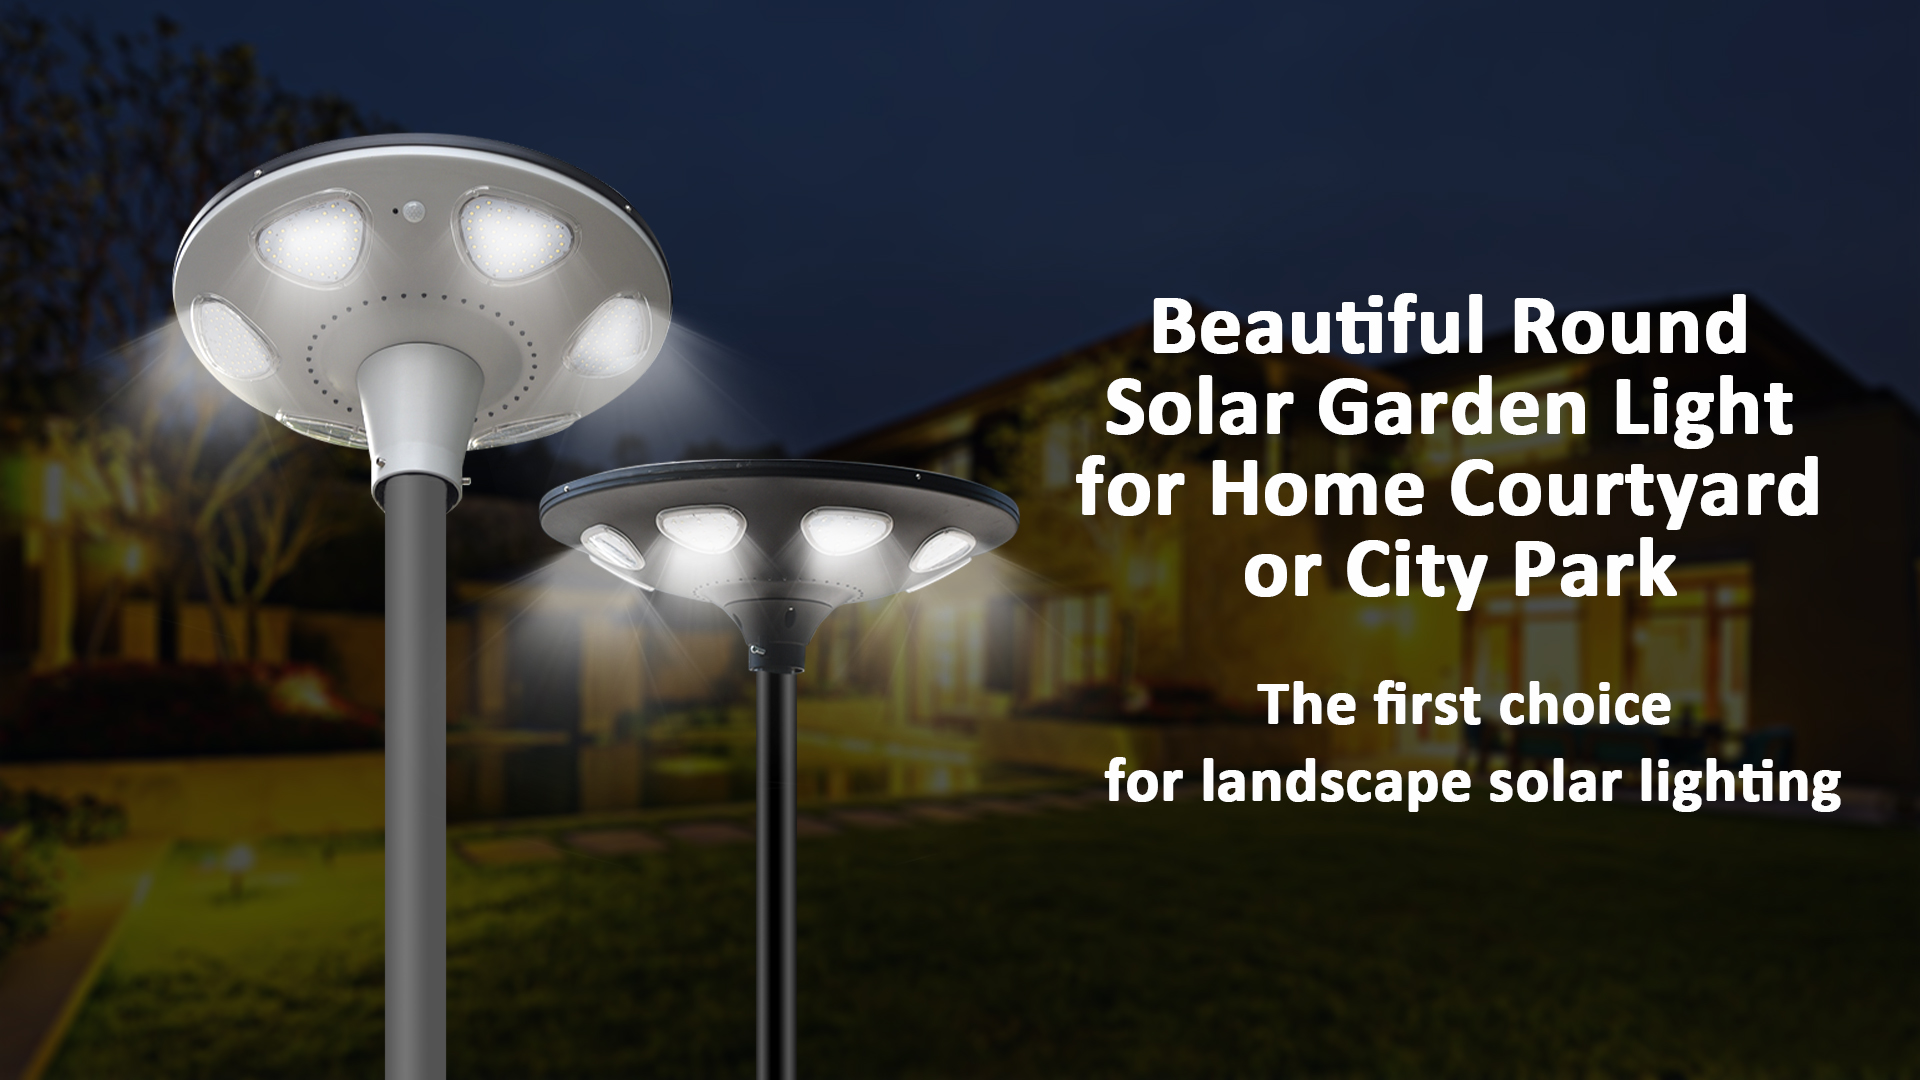 Belle lumière solaire ronde de jardin pour la cour de la maison ou le parc de la ville